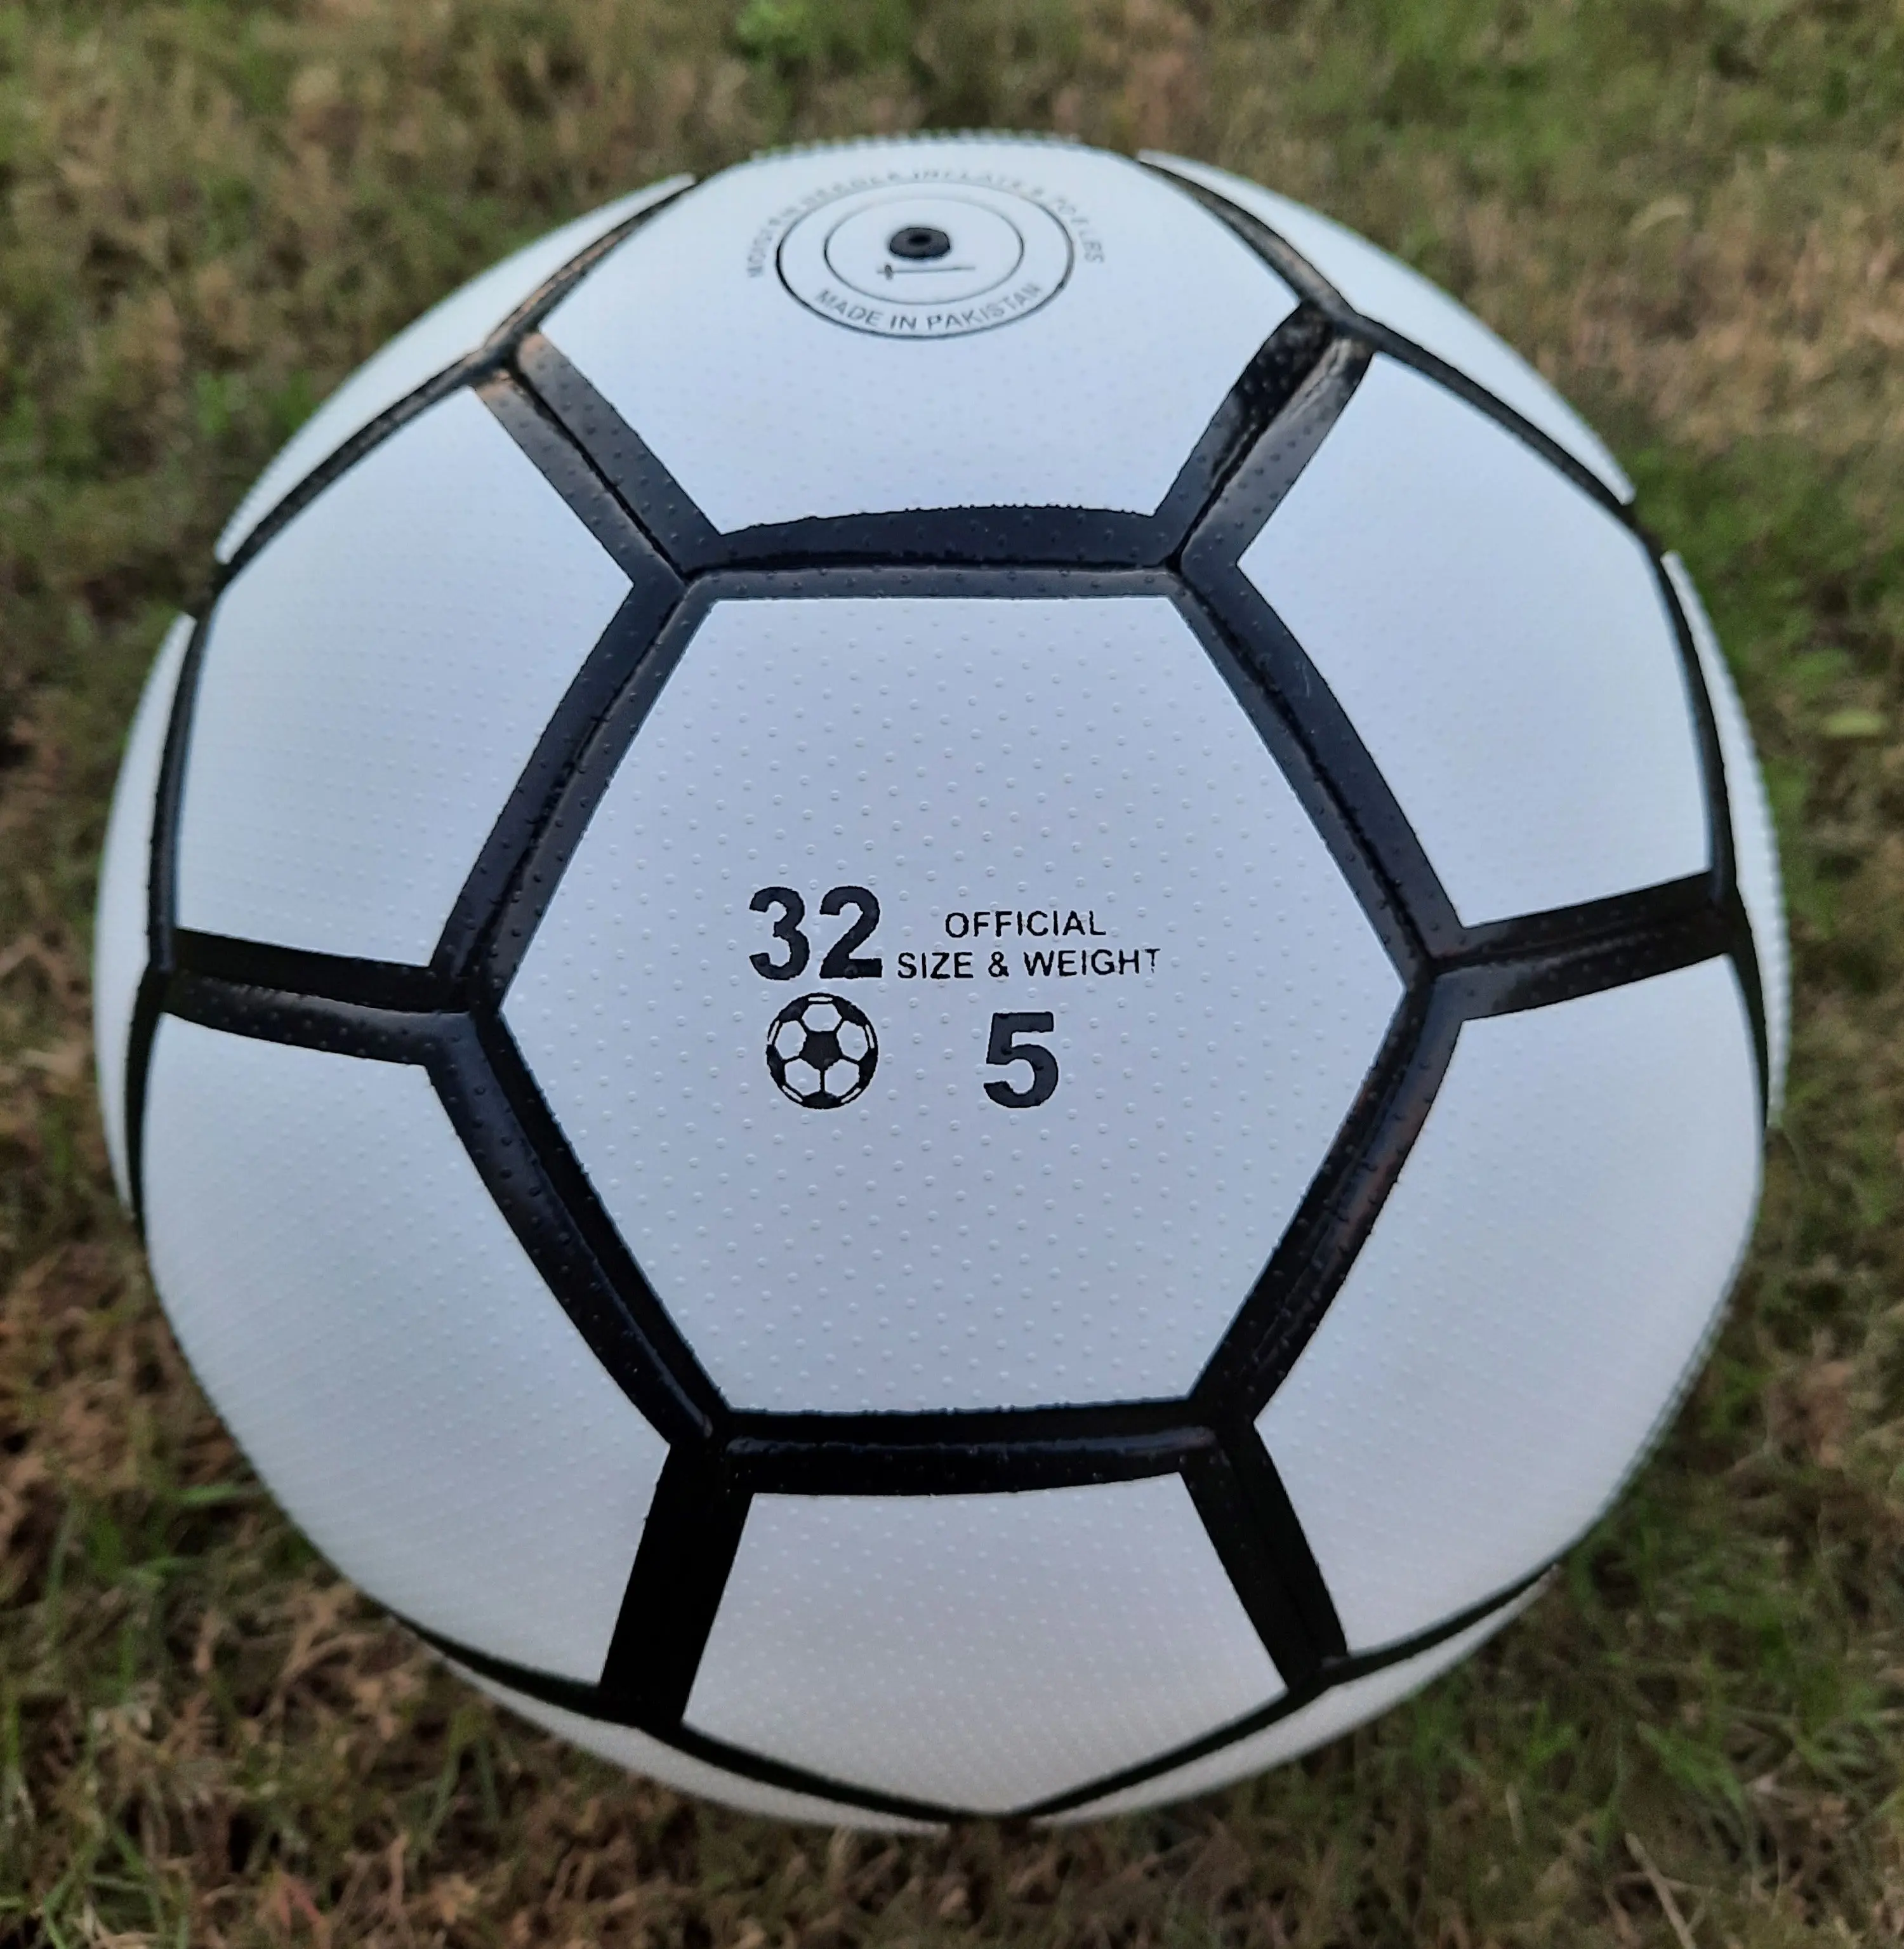 كرة أرضية أفضل كرات كرة قدم لكرة القدم حرة تعمل باللمس مطابقة الجودة بأسلوب حر لكرة القدم التحكم في كرة القدم